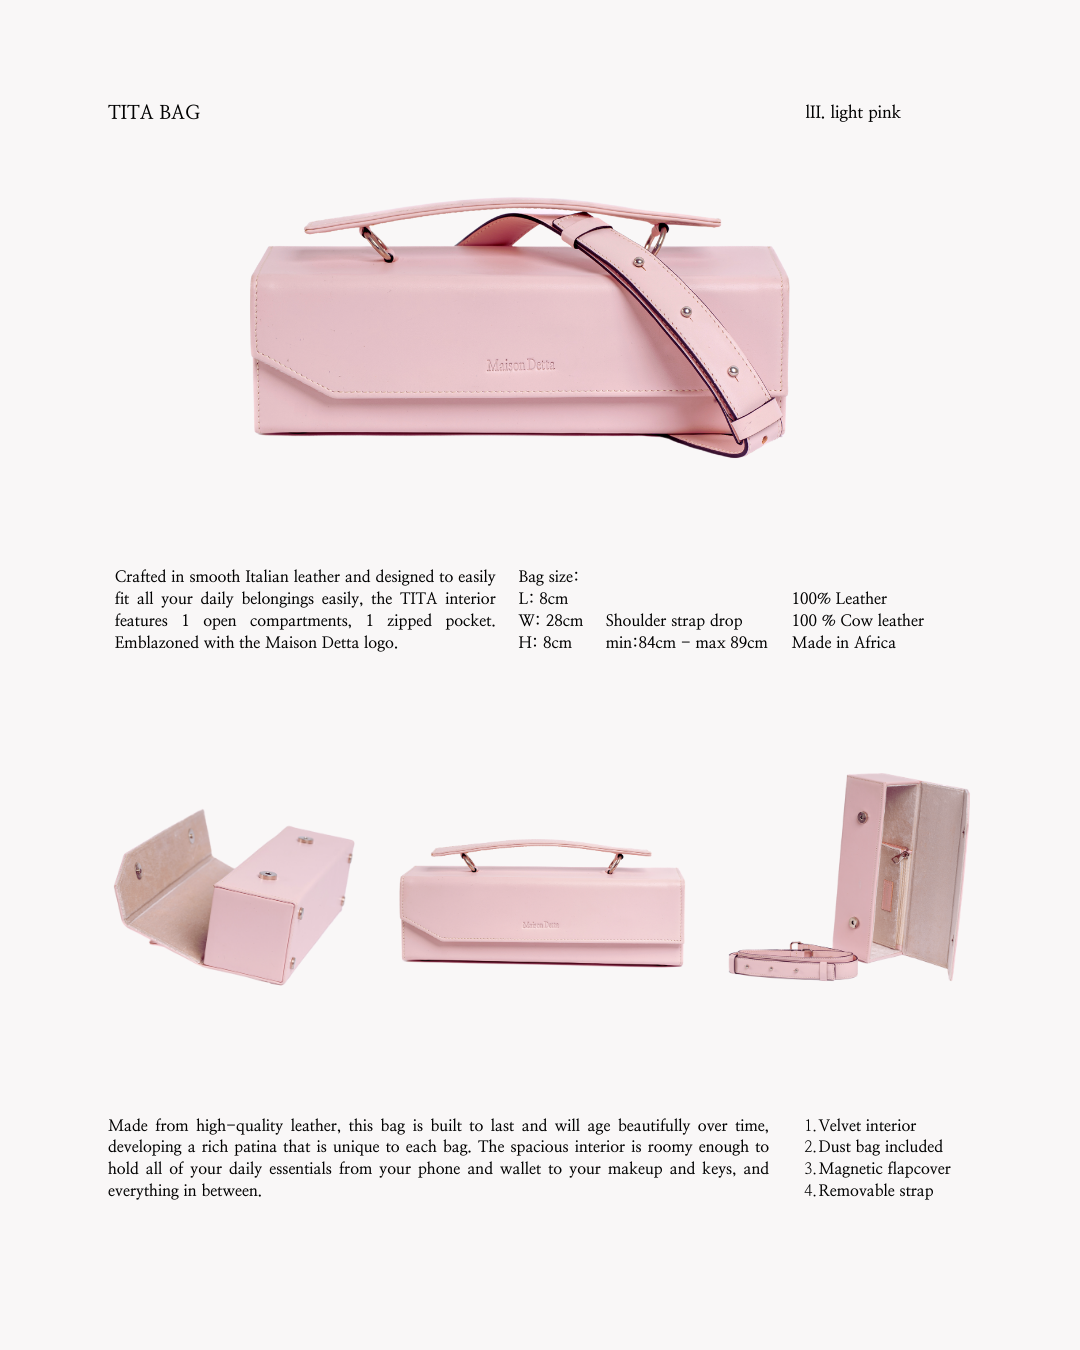 The Pink Tita Bag